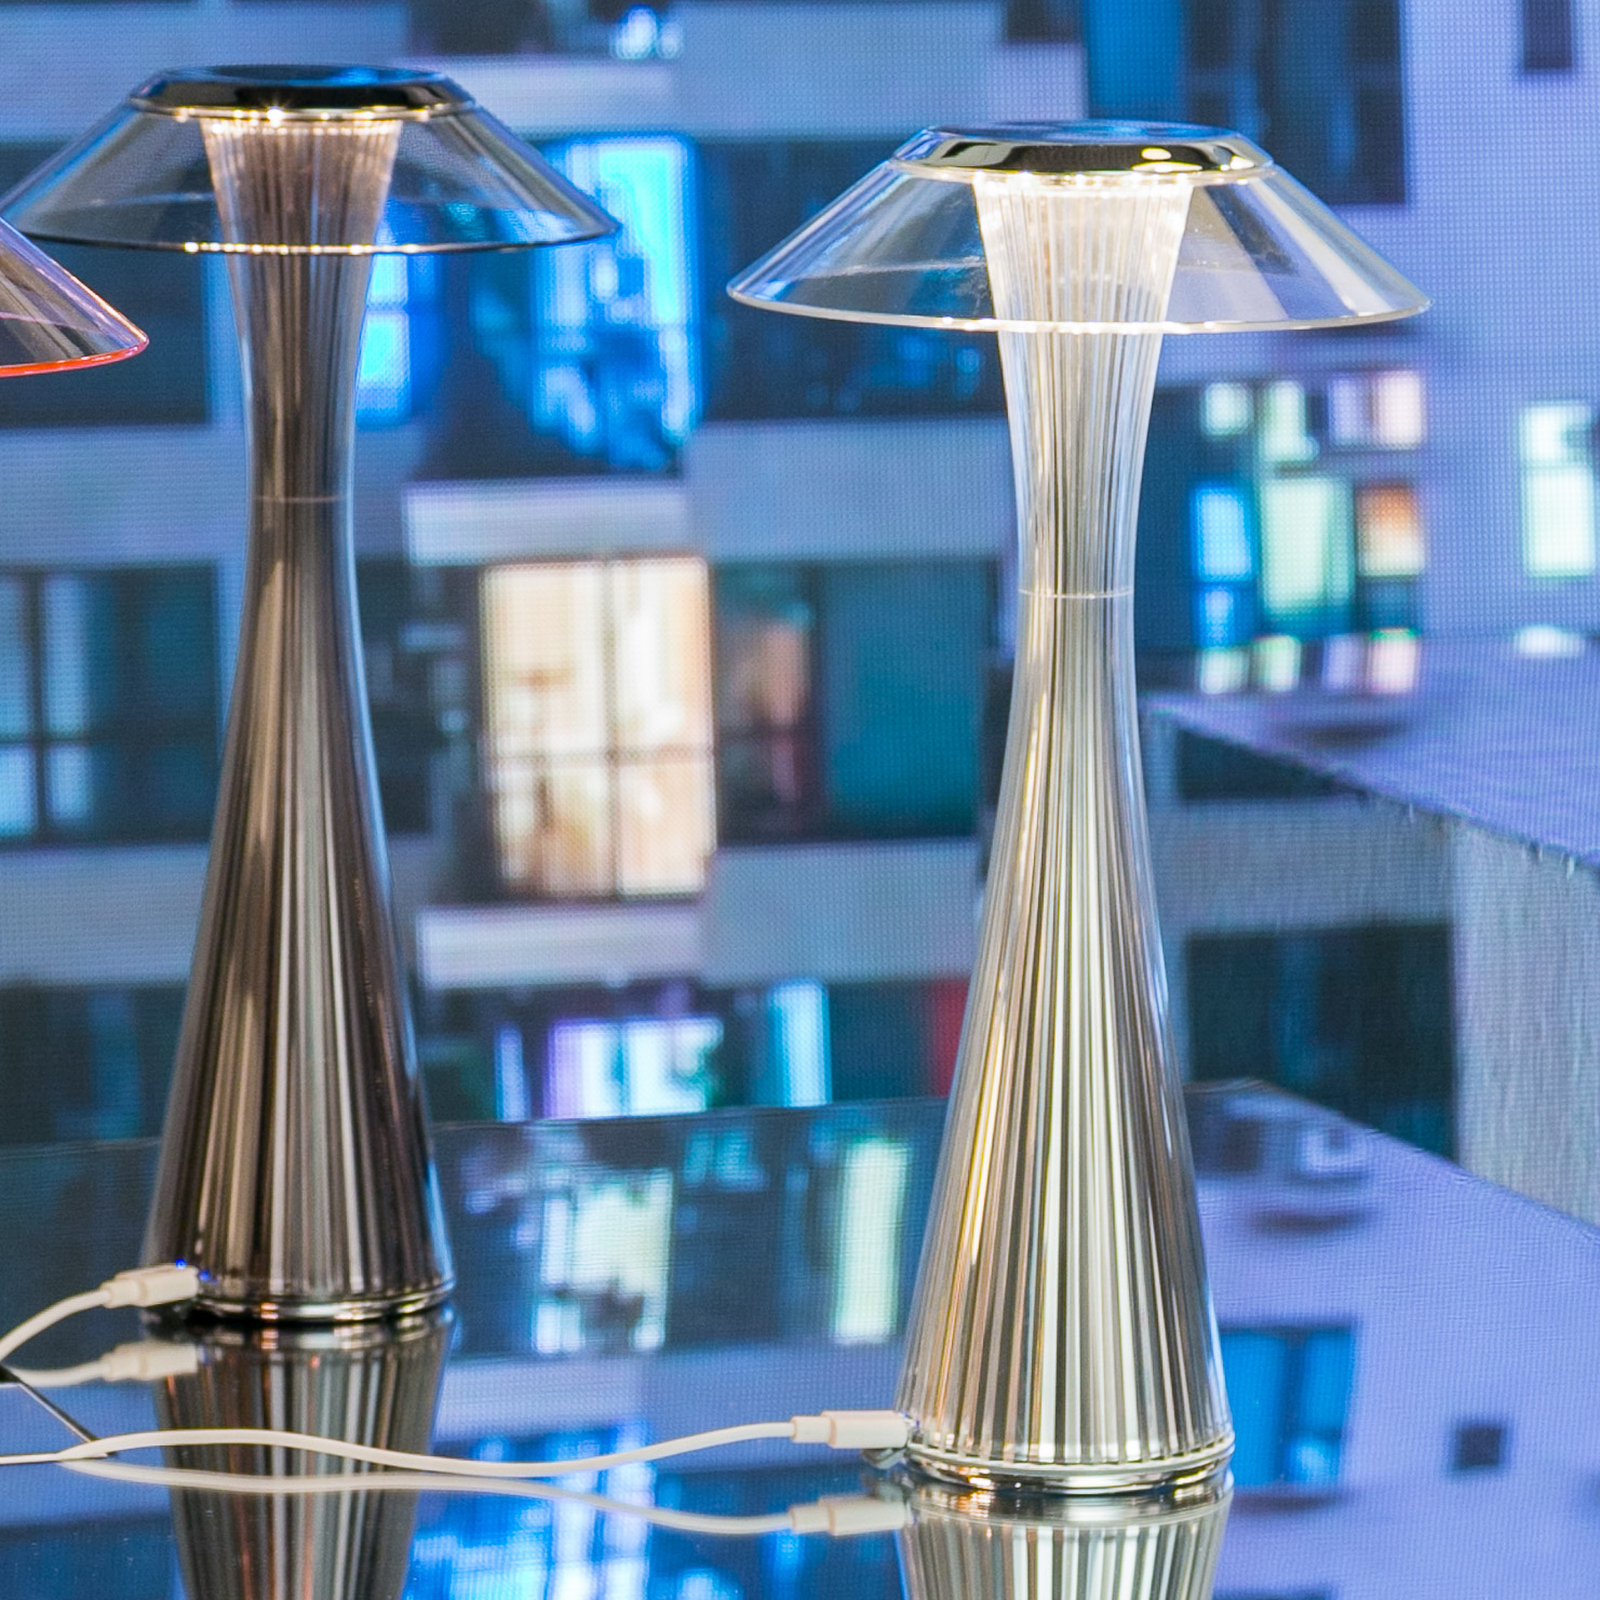 Kartell Space – dizajnérska stolná LED lampa titán